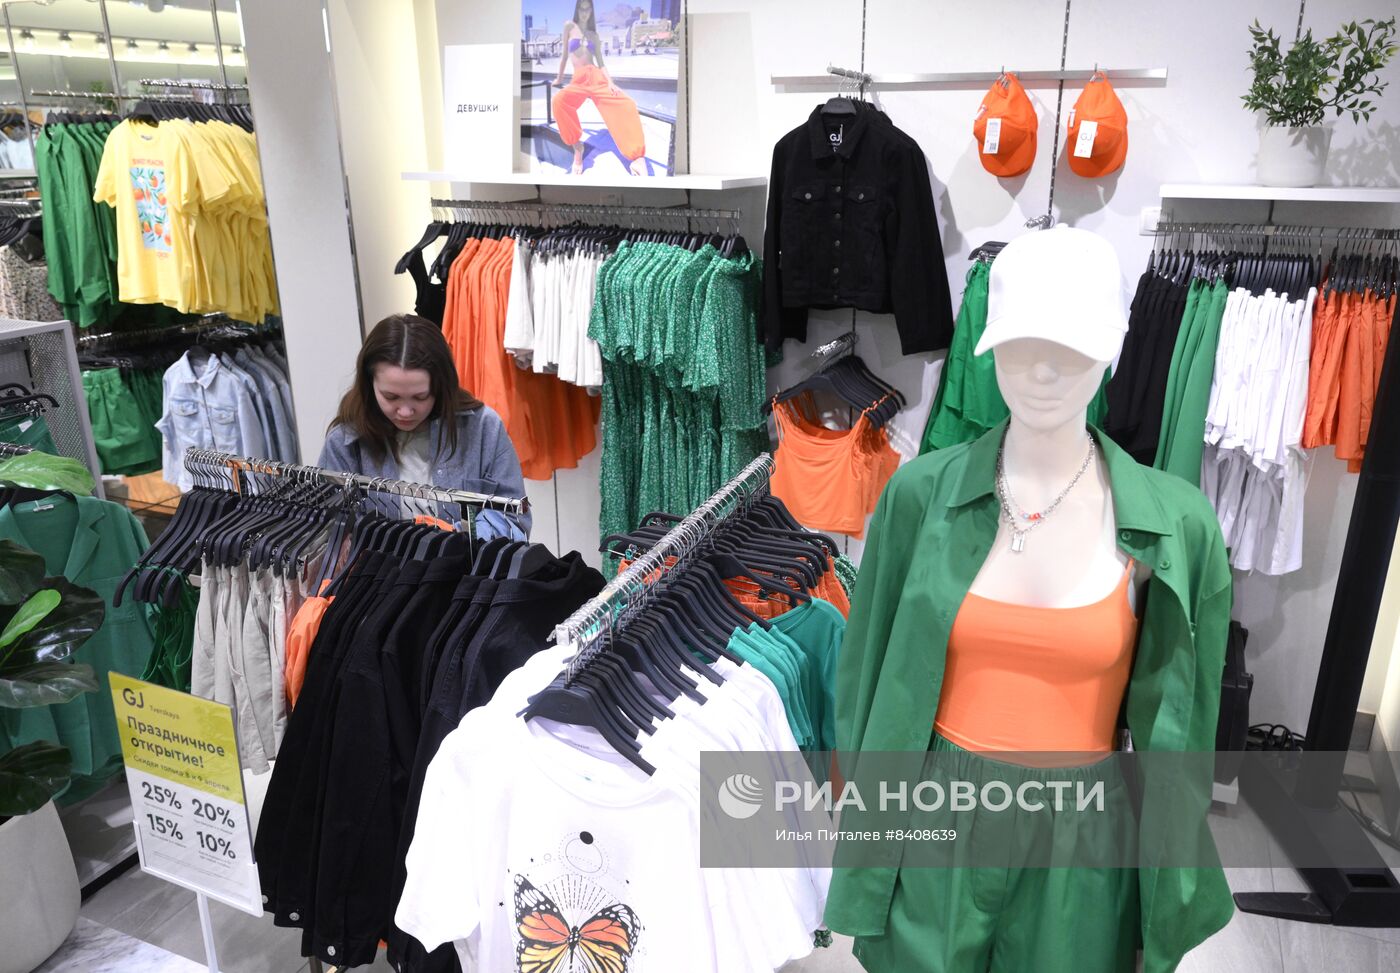 Открытие флагманского магазина Gloria Jeans в Москве